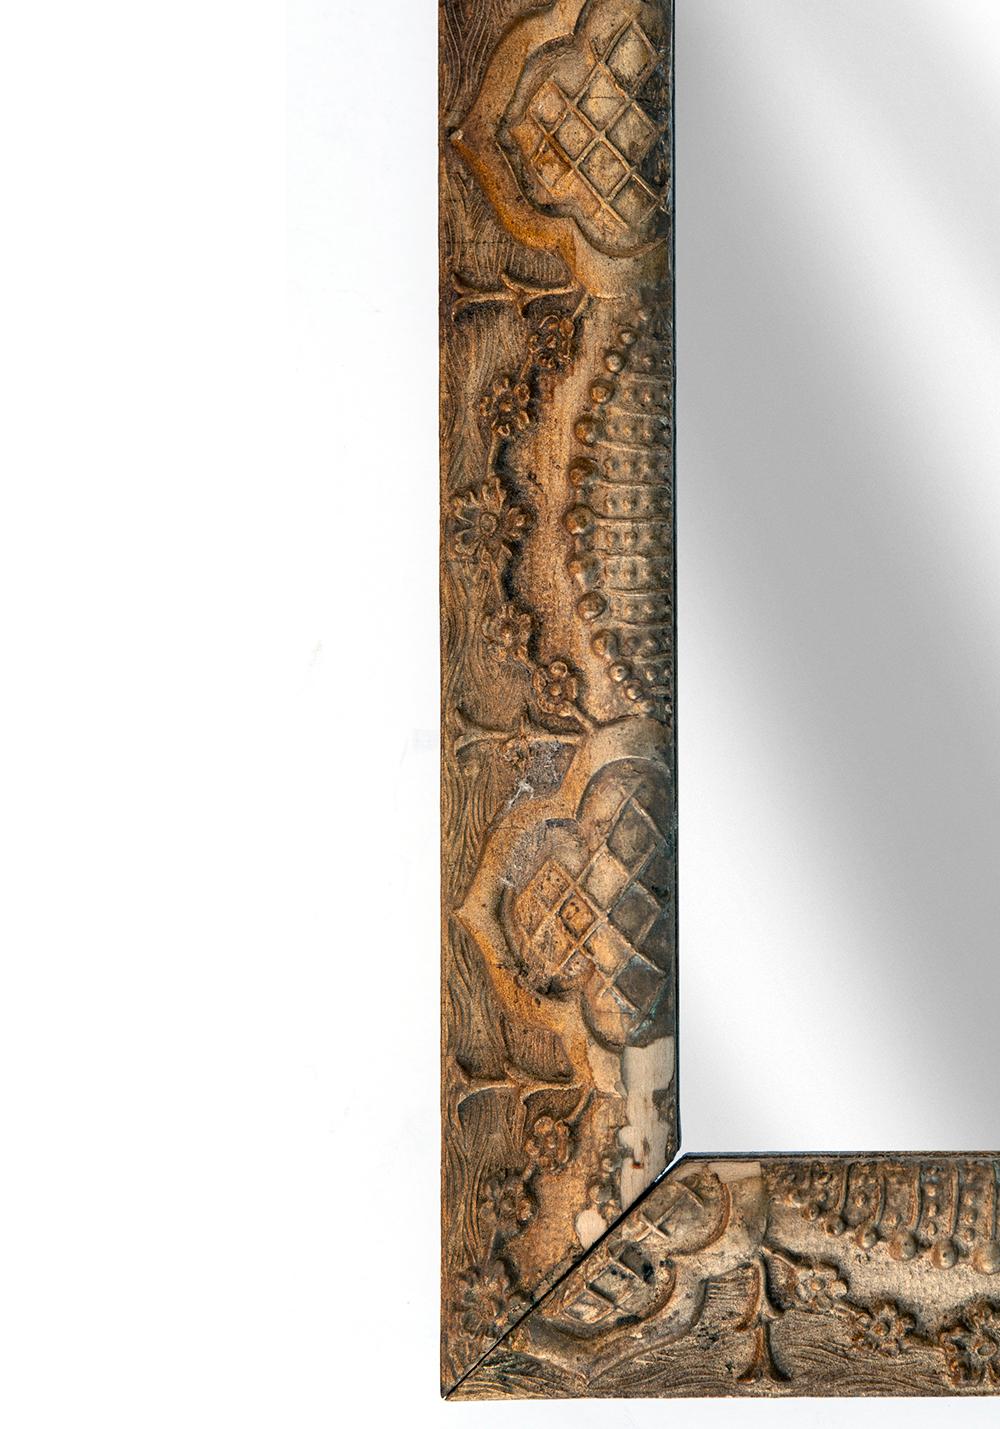 cadre fin du XIXe siècle en bois doré et gesso mouvement esthétique avec miroir neuf. Motif répétitif détaillé au gesso en or chaud. Câblé pour être suspendu à l'horizontale ou à la verticale.

